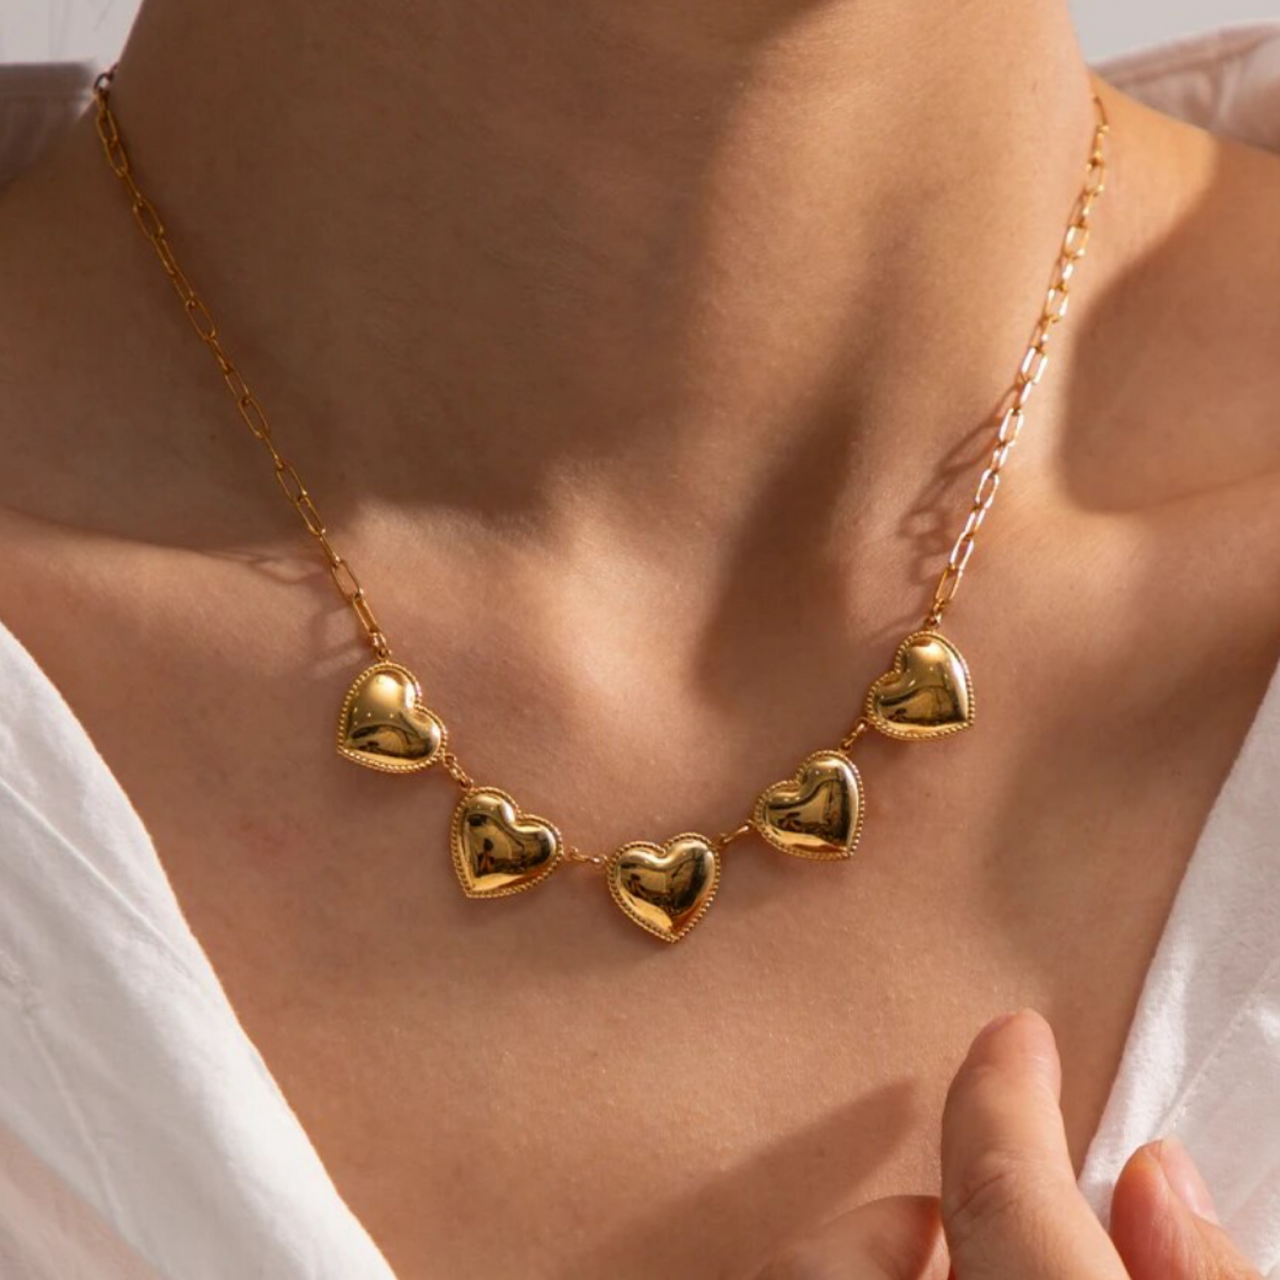 Ana hearts necklace 💧